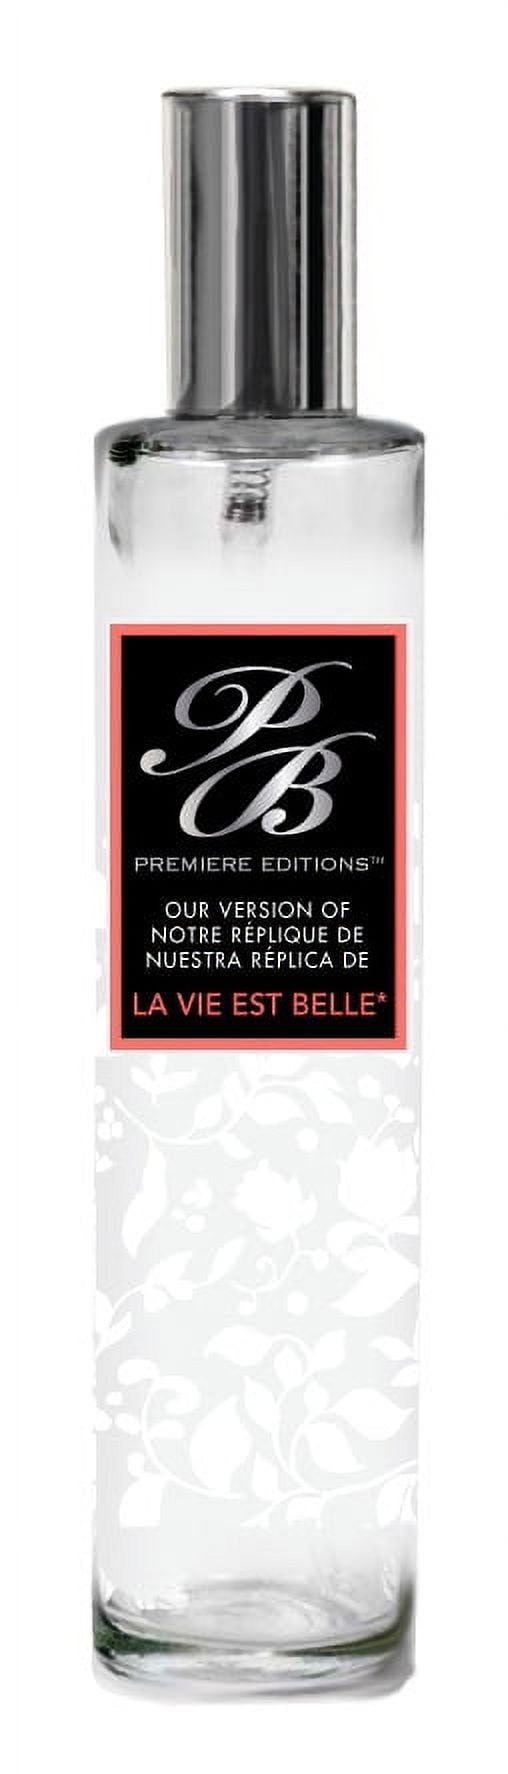 PB ParfumsBelcam PB Premiere Editions, Version of La Vie Est Belle